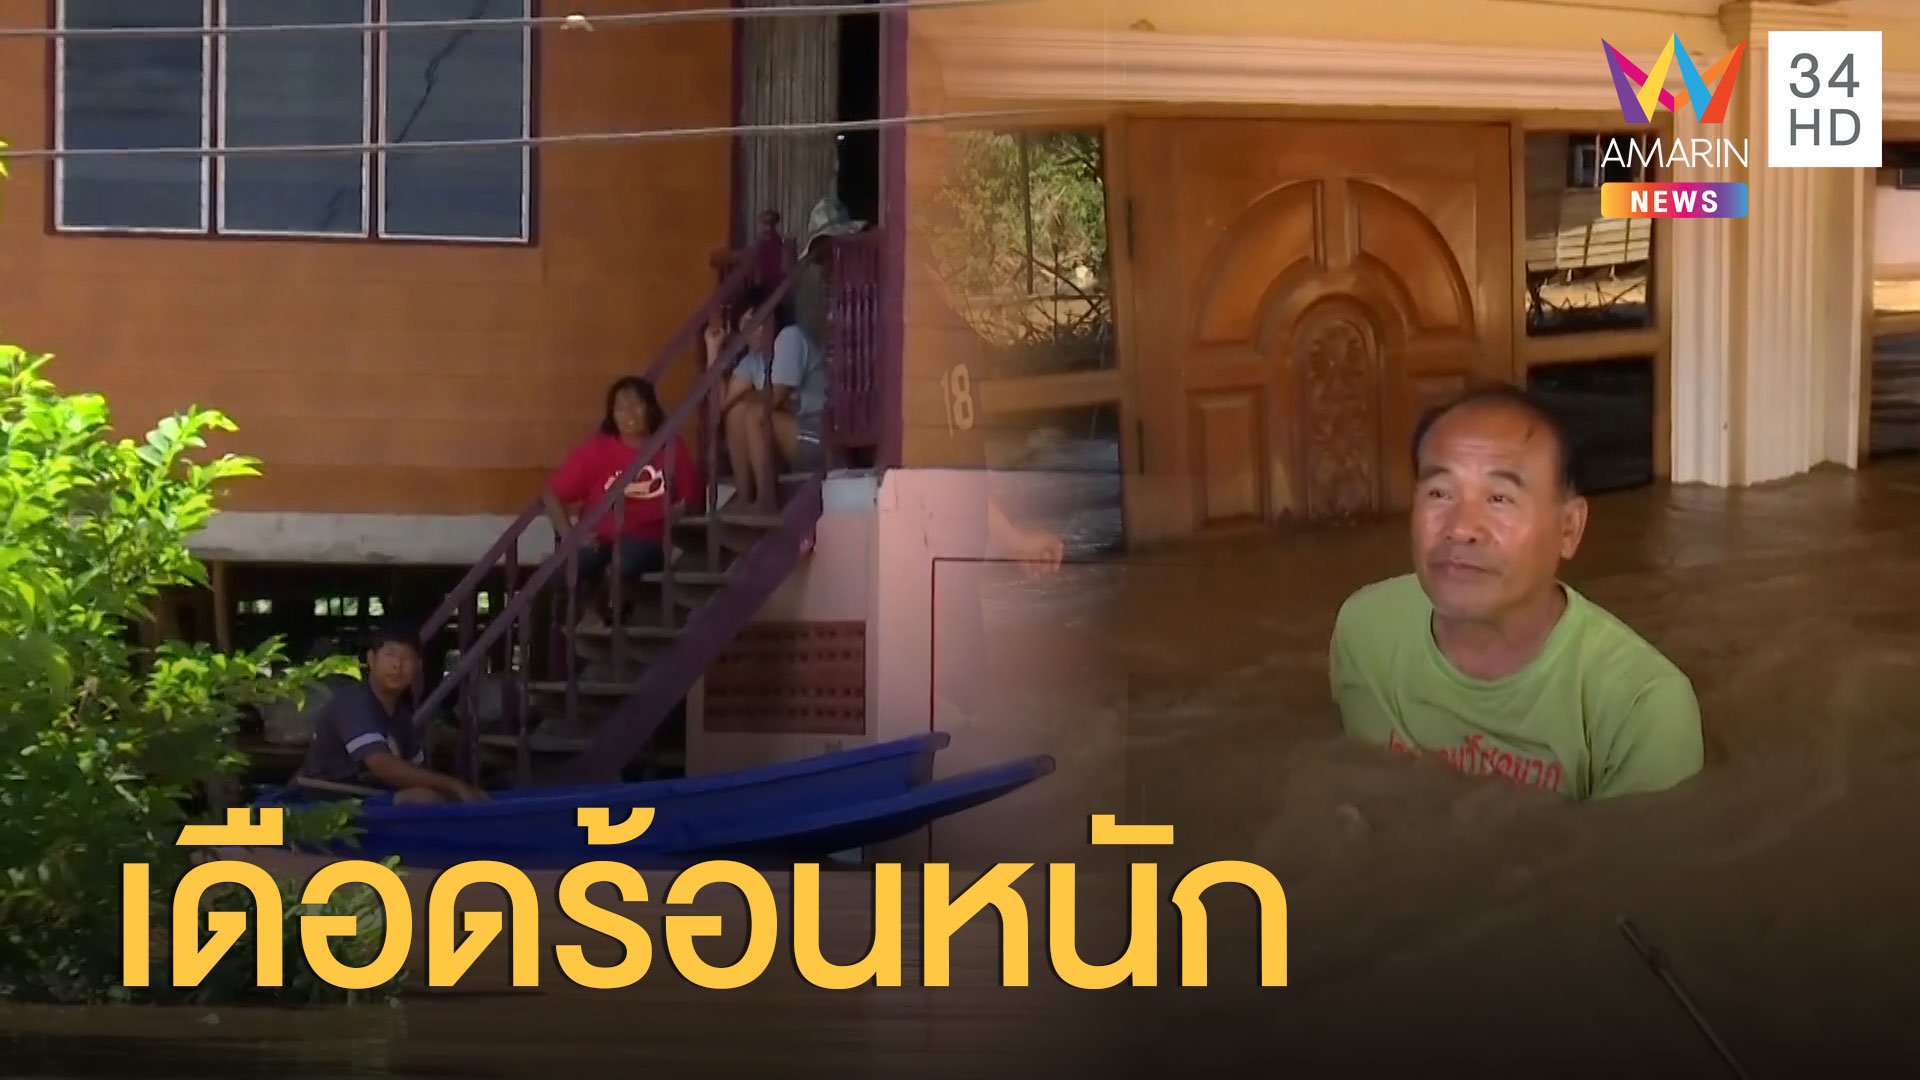 ชาวสุโขทัยเดือดร้อนหนัก น้ำยังท่วมสูง บ้านเรือนนับพันหลังวิกฤต  | ข่าวเที่ยงอมรินทร์ | 26 ส.ค. 63 | AMARIN TVHD34